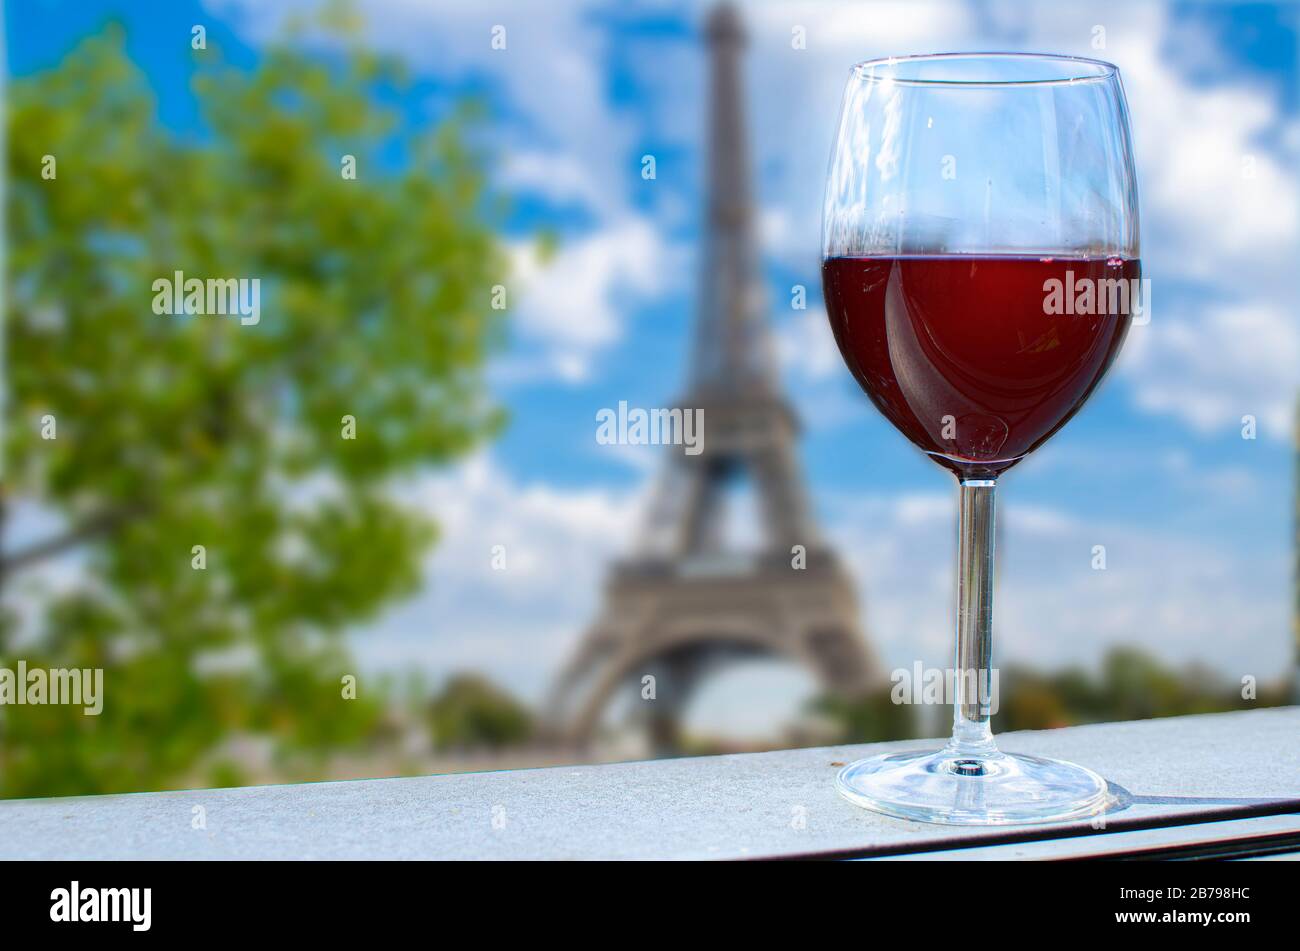 Glas Wein auf dem Eiffelturm verwischt den Hintergrund. Sonniger Blick auf das Glas Rotwein mit Blick auf den Eiffelturm in Paris, Frankreich Stockfoto